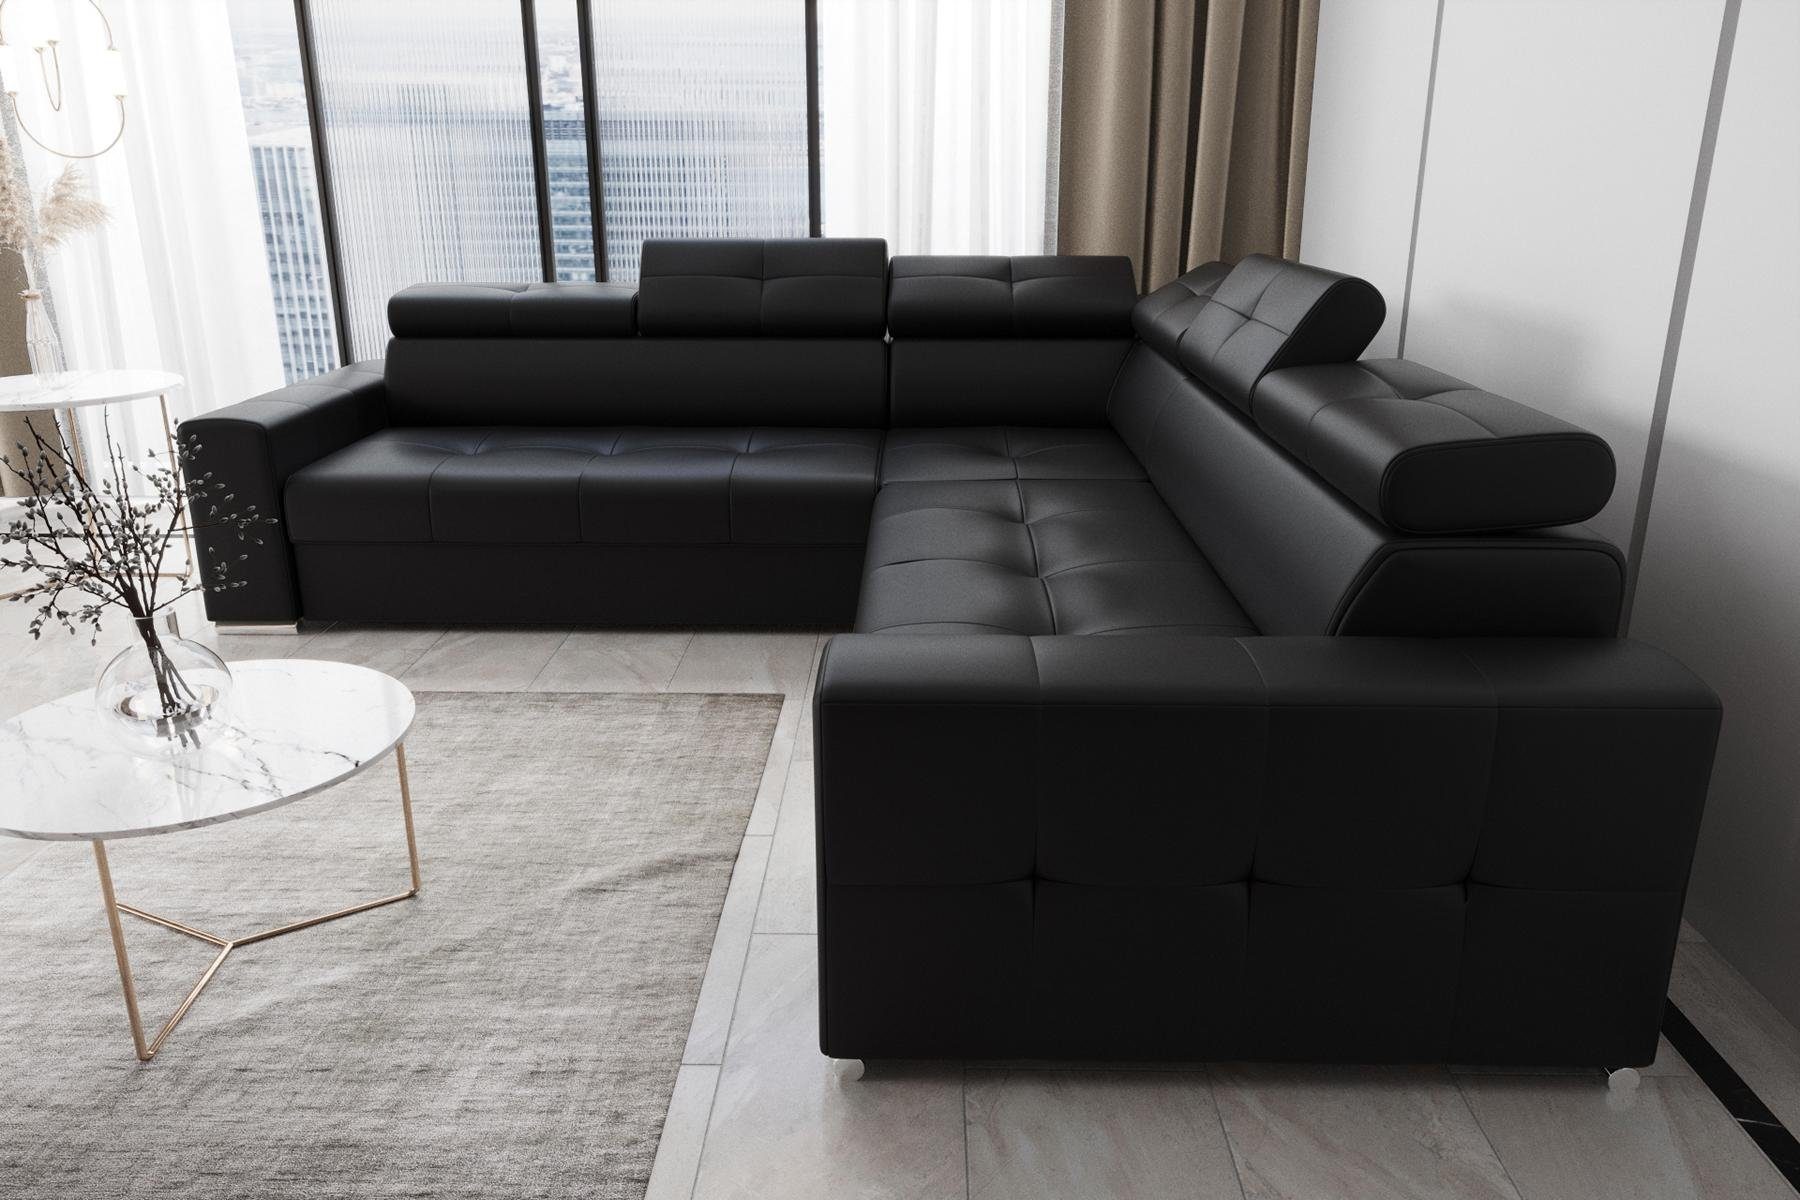 Couch, Ecksofa JVmoebel Ecksofa Textil Schwarz in Made Europe Luxus Modern Leder L Form Wohnzimmer